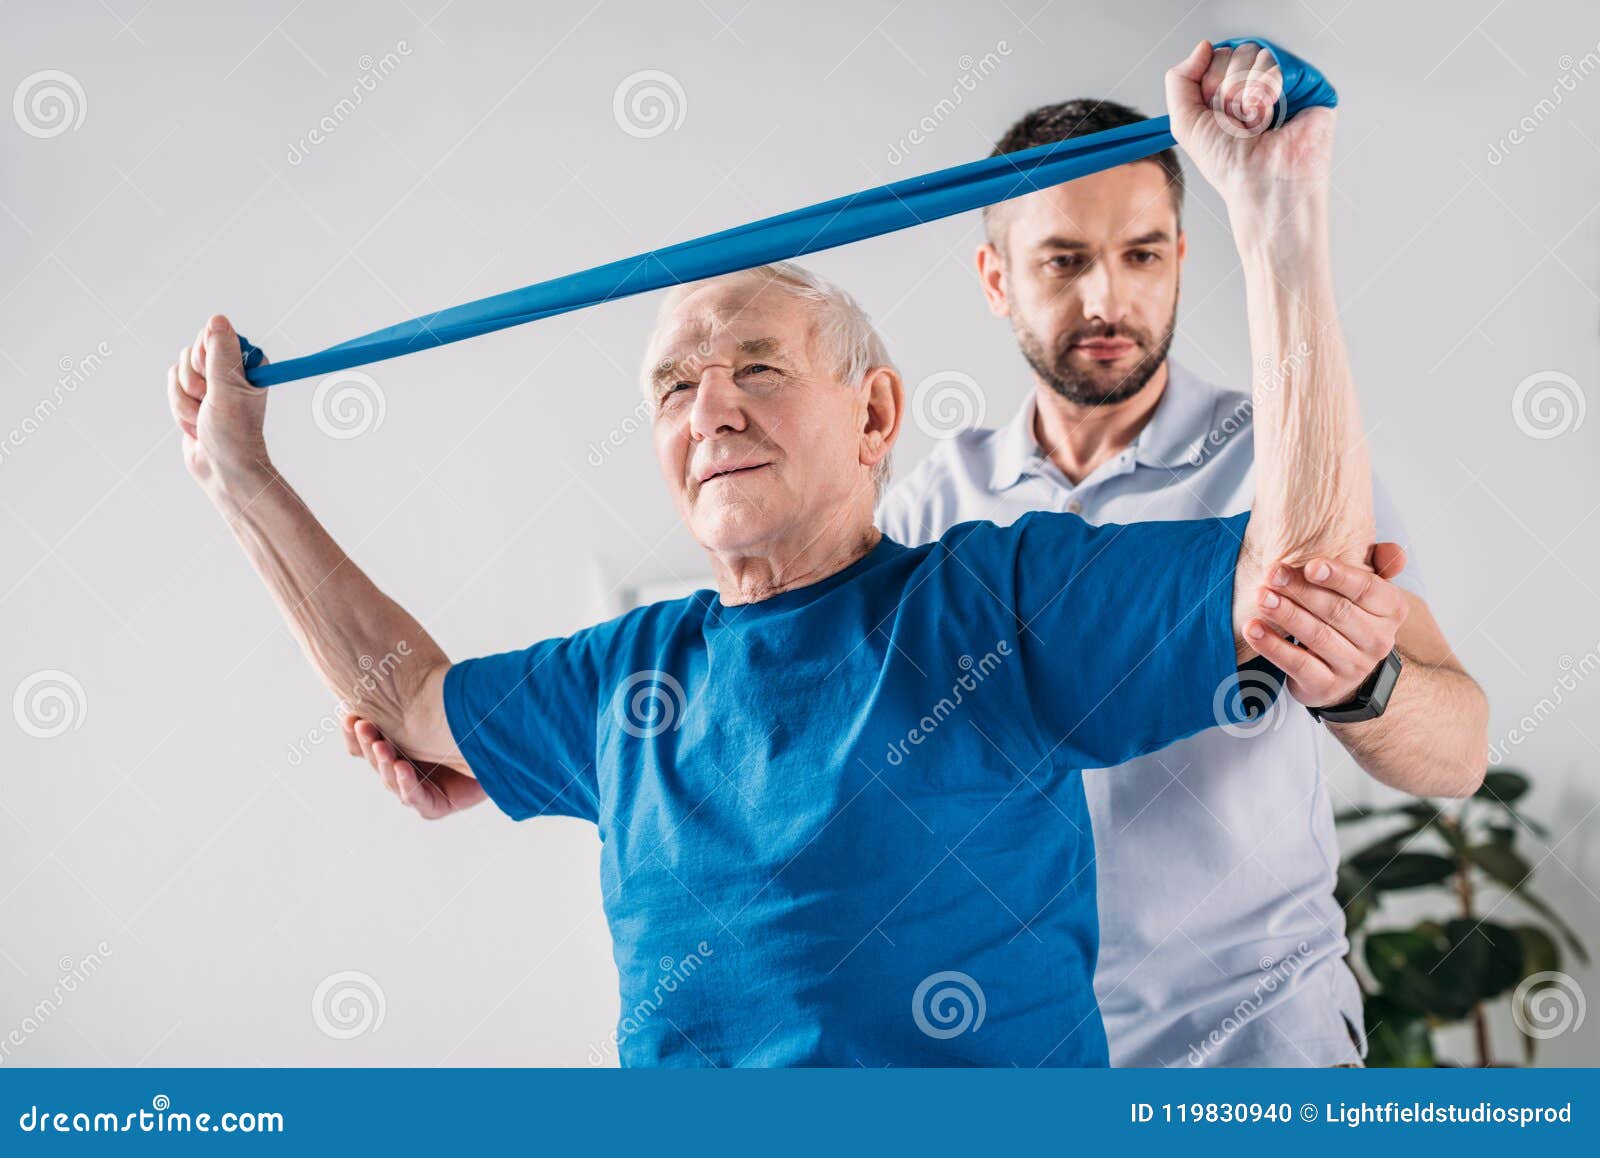 focused rehabilitation therapist assisting senior man